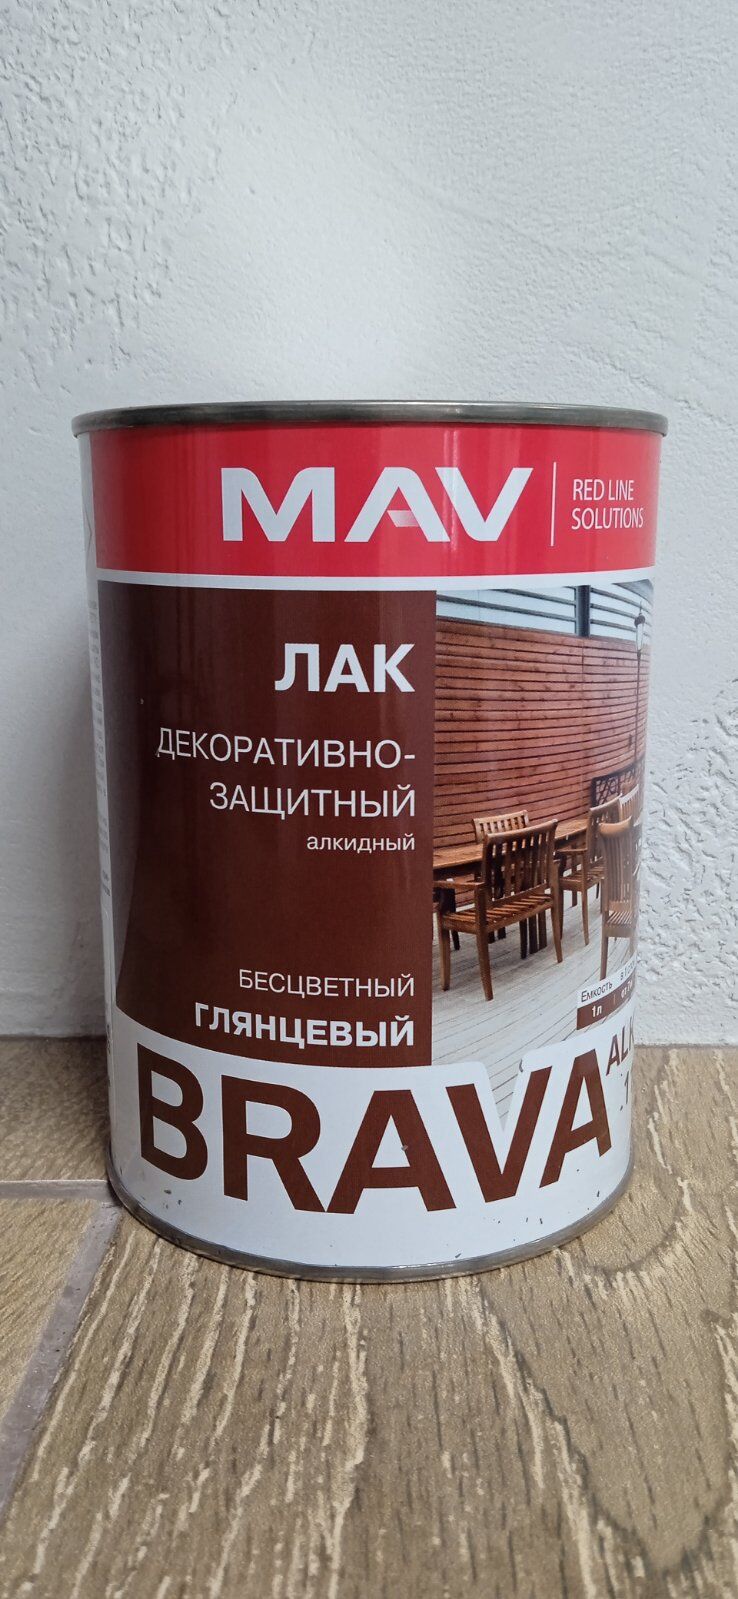 Лак BRAVA ALKYD 1120 декоративно-защитный (ПФ - 1120) бесцветный глянцевый, 1,0 л.(0,7кг.) пр-во Беларусь